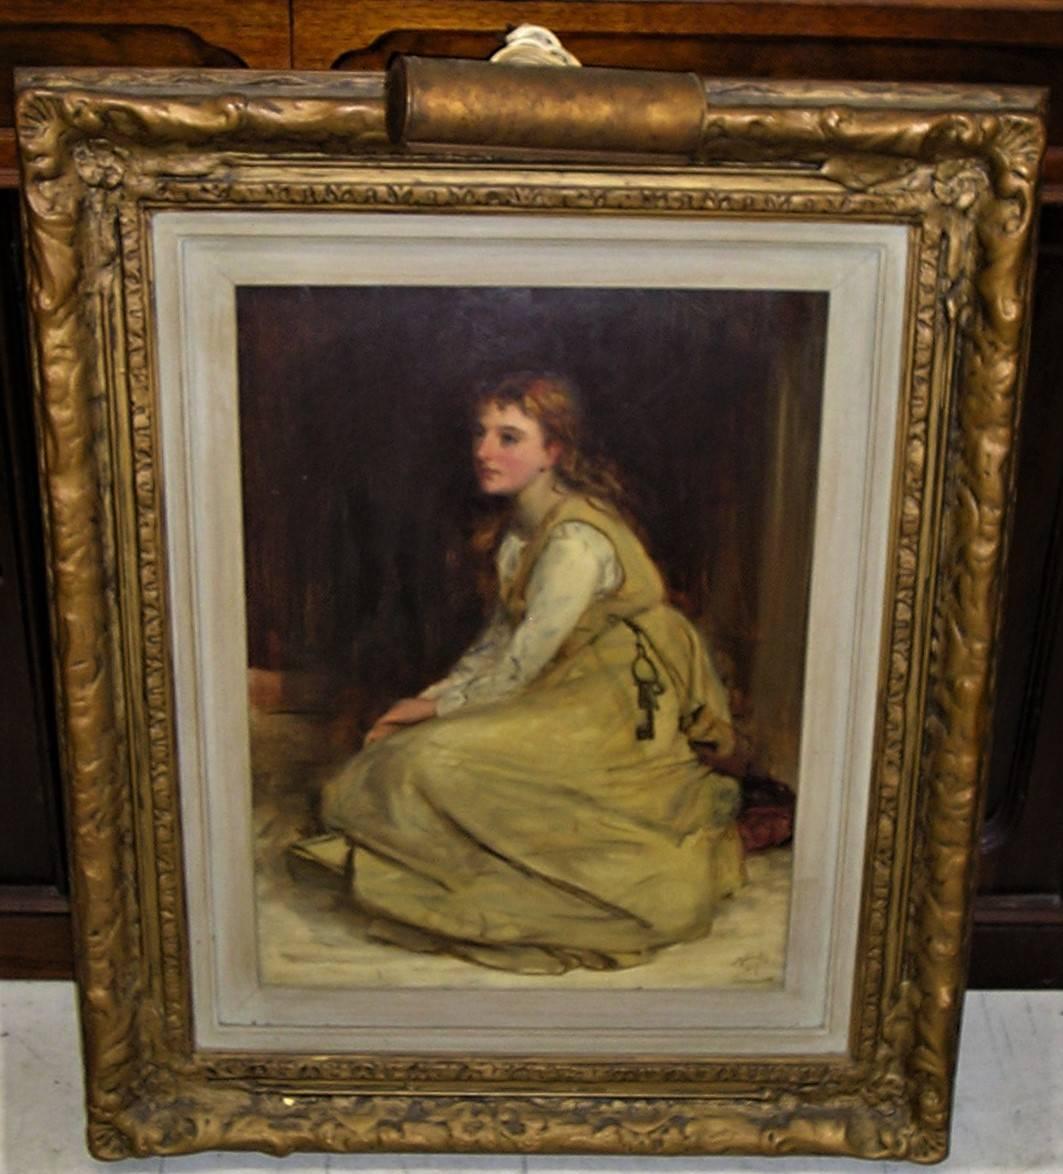 Robert Herdman (écossais 1829-1888) huile sur carton.
Joliment encadré par Robert Herdman représentant une femme assise avec des clés.
Mesures : Taille sans cadre 17.5